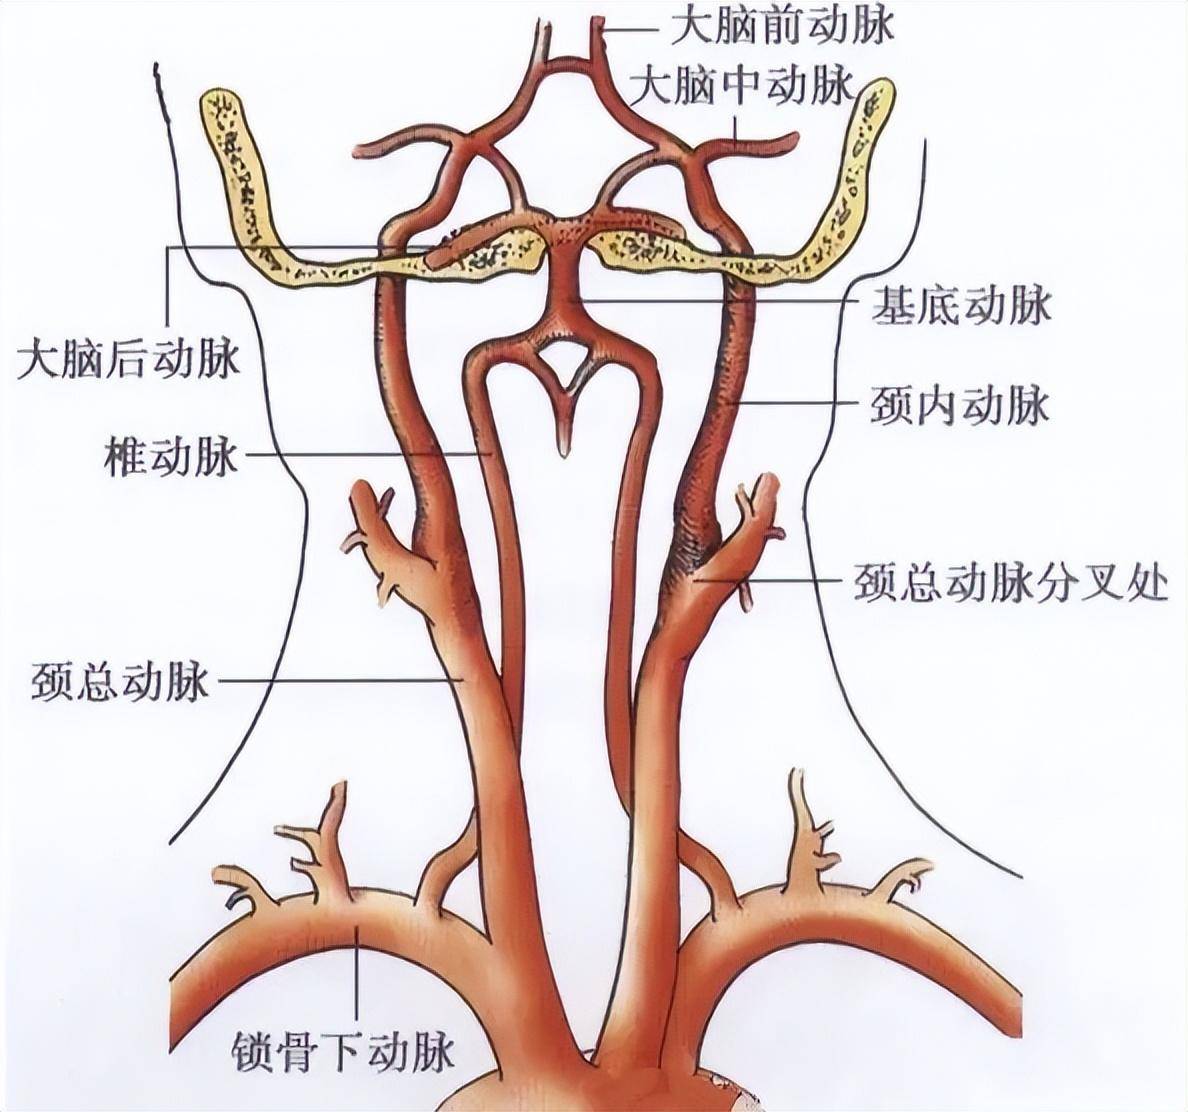 脑动脉供血区域图示图片